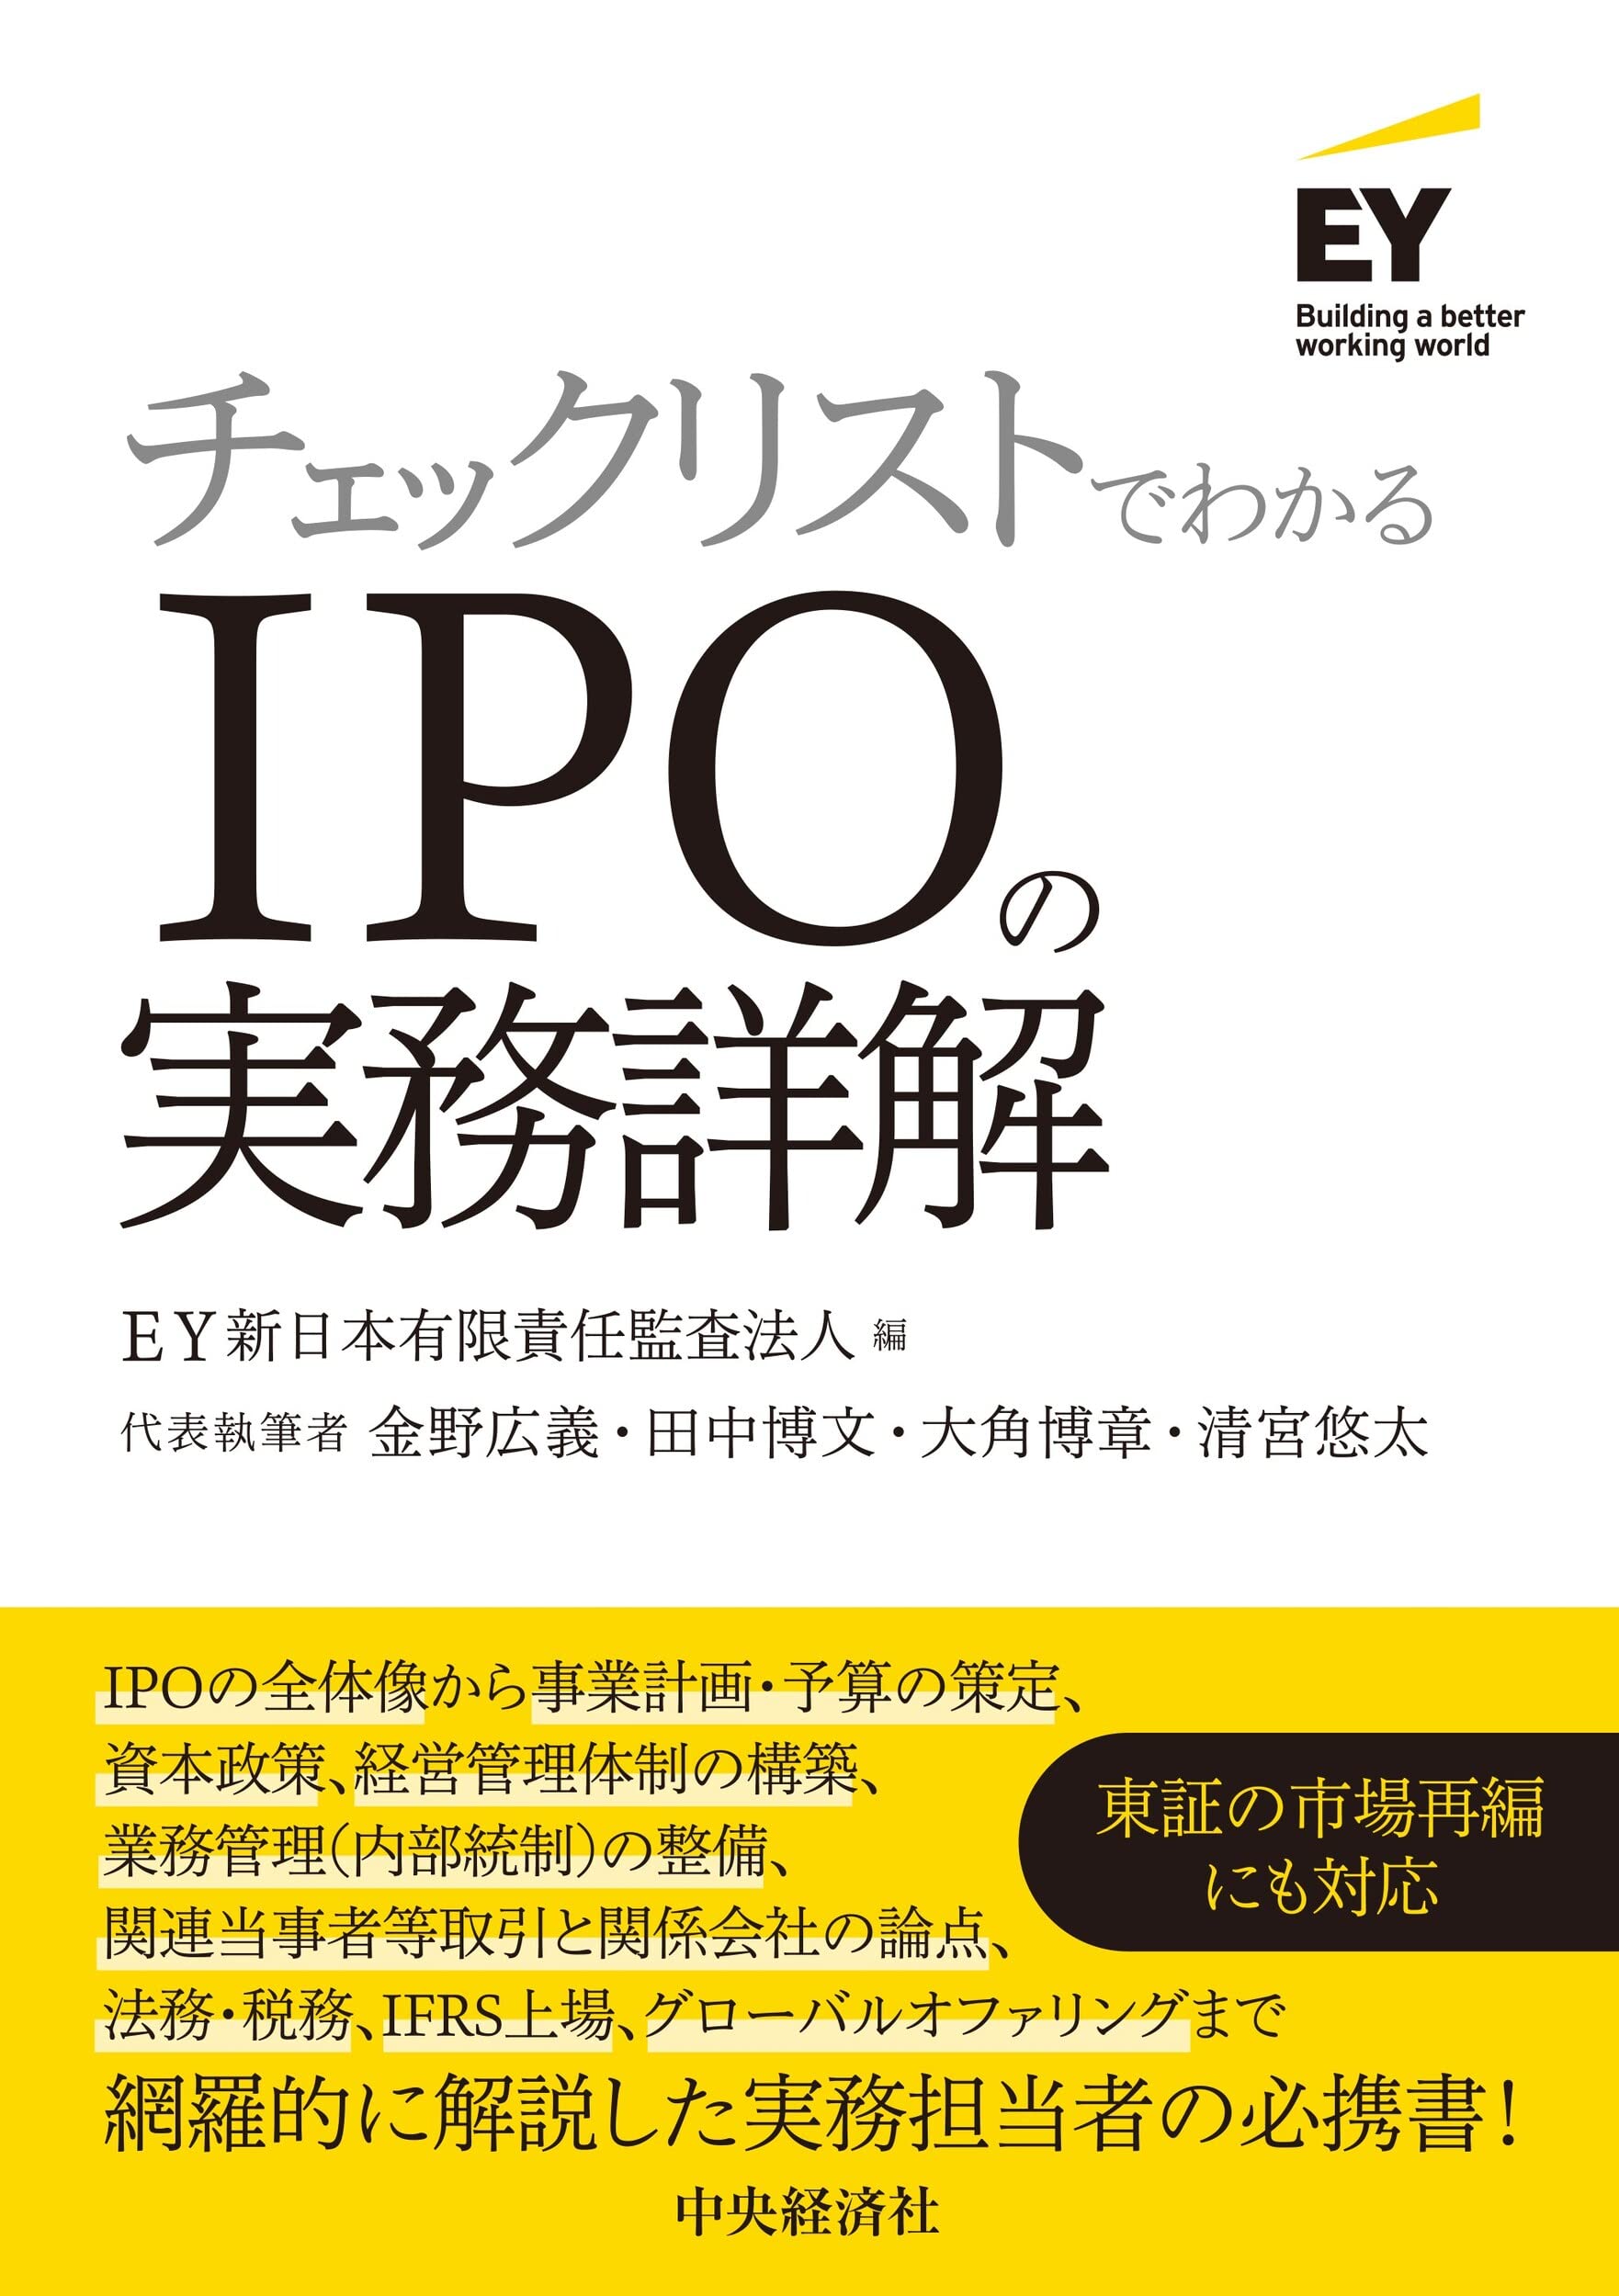 柳橋式 IPO投資法講座【極】おまけ MMT メンタルマスター RSS 内田博史